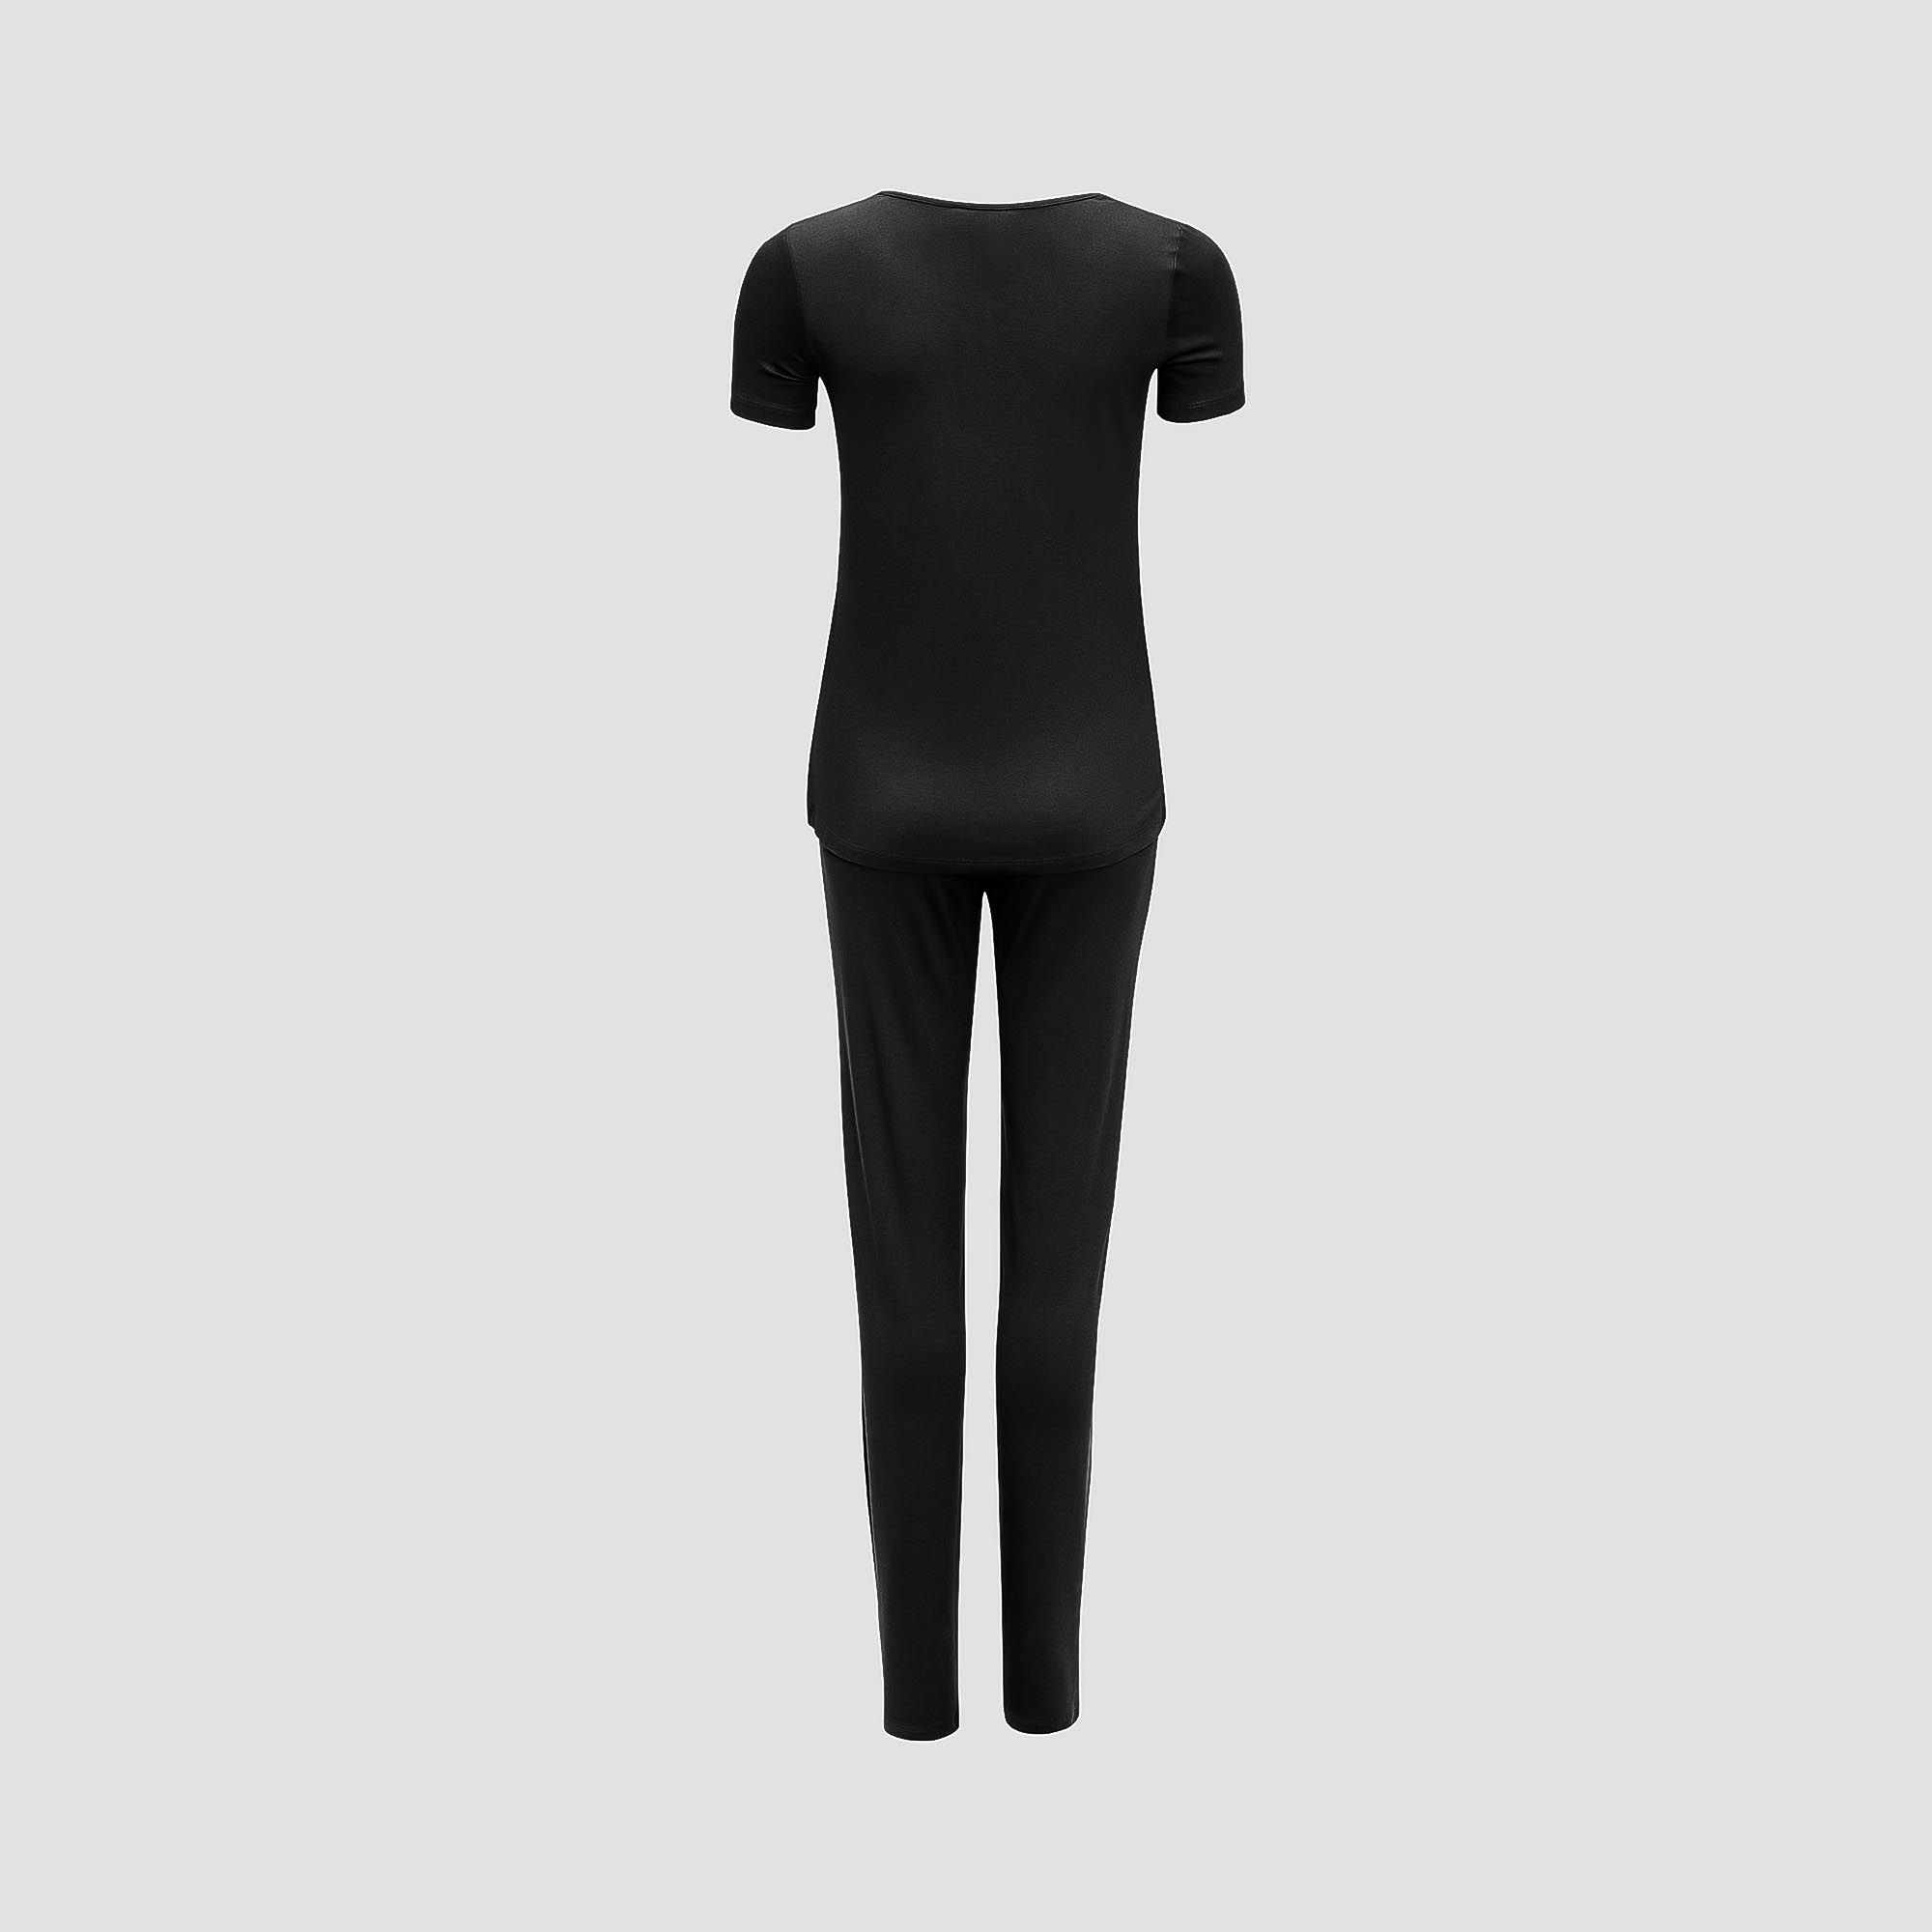 Пижама Togas Ингелла черная женская M(46) 2 предмета, размер M(46) - фото 3